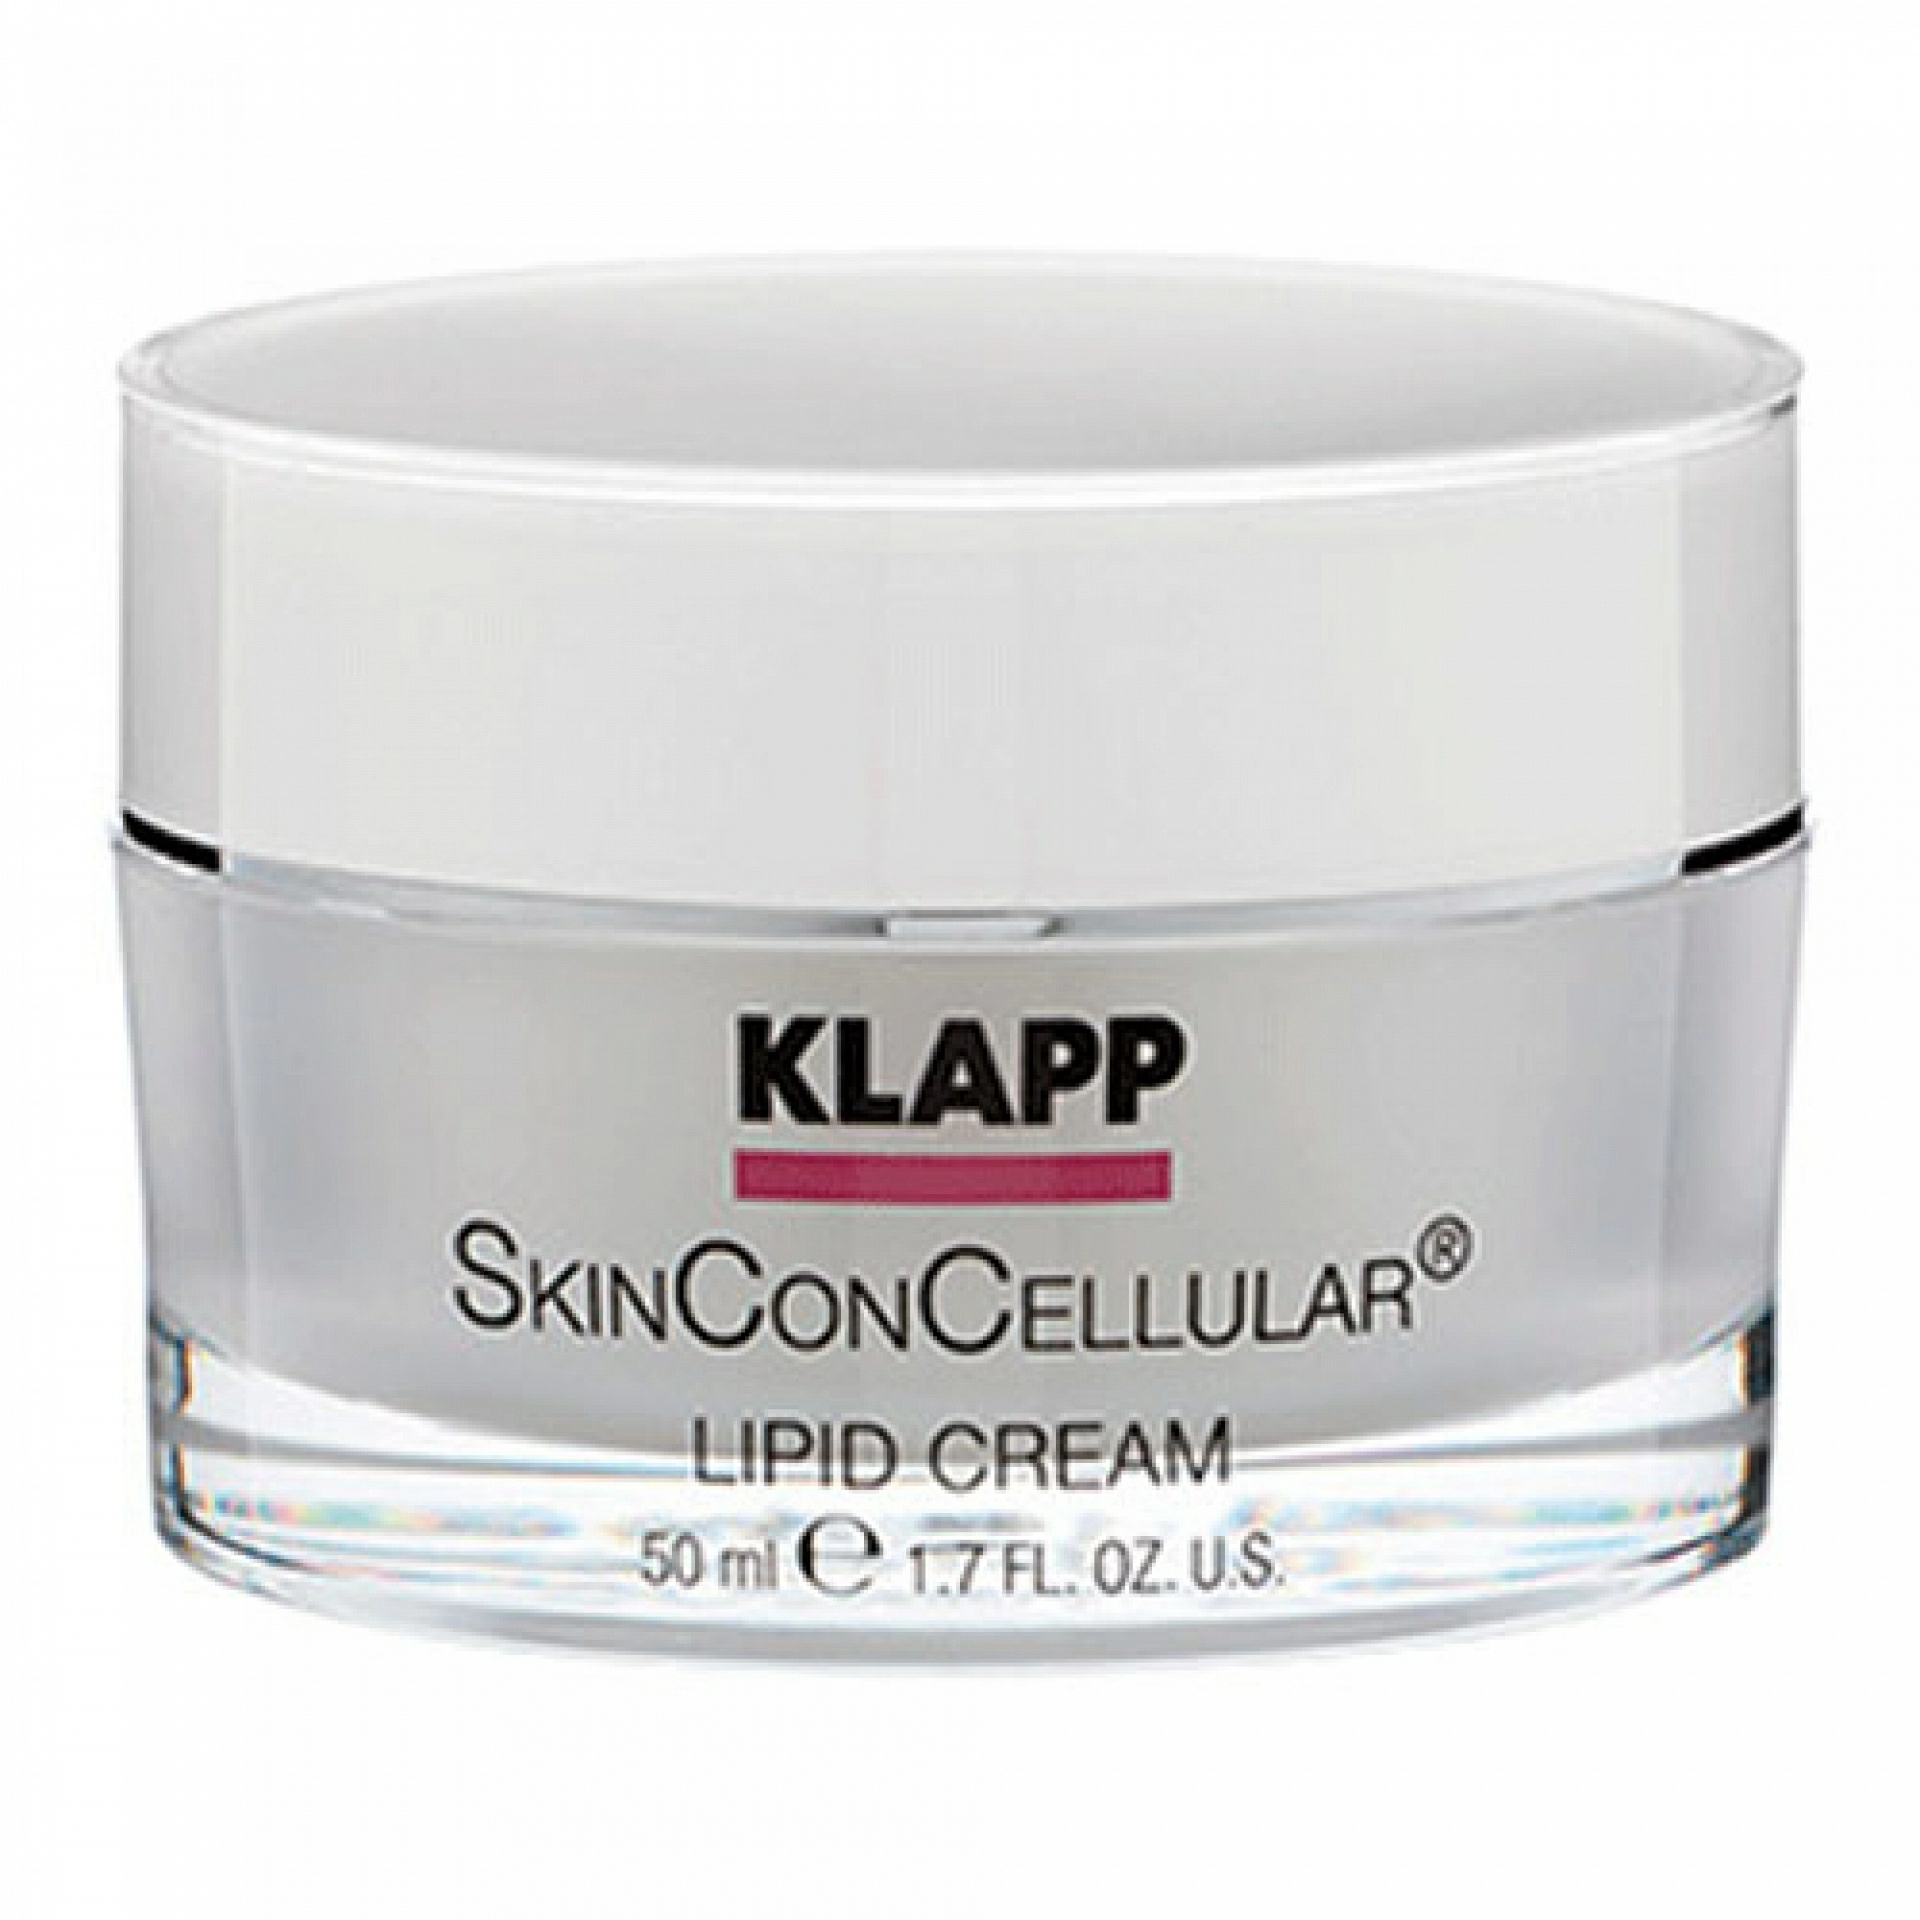 Lipid Cream | Crema Regeneradora 50ml - SkinConCellular - Klapp ®